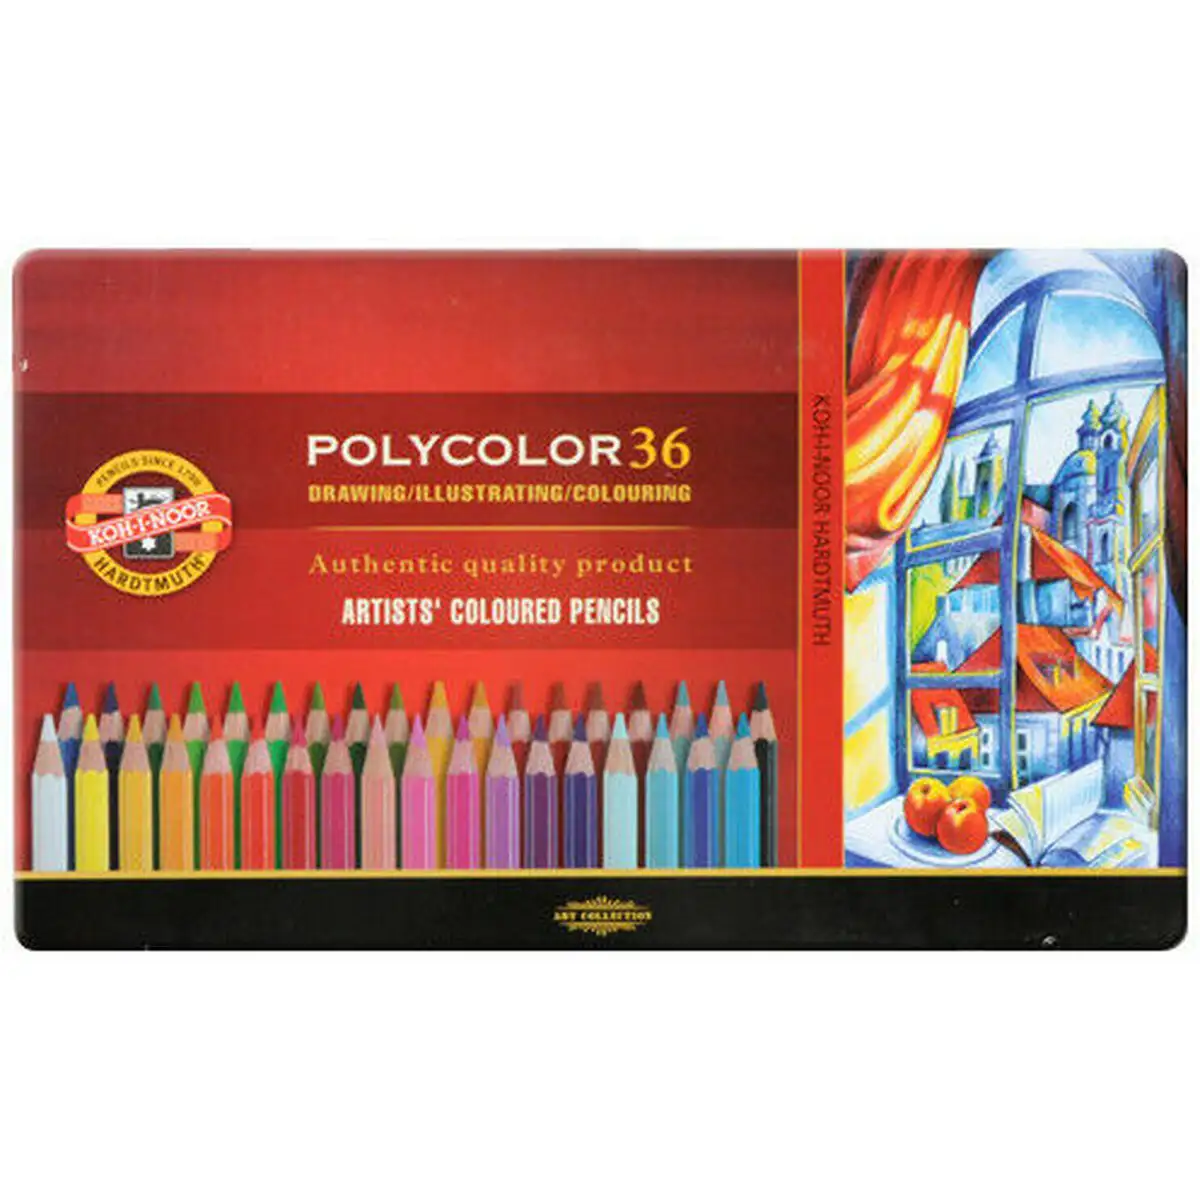 Crayons de couleur michel polycolor multicouleur 36 pieces_5640. DIAYTAR SENEGAL - Où la Qualité et la Diversité Fusionnent. Explorez notre boutique en ligne pour découvrir une gamme variée de produits qui incarnent l'excellence et l'authenticité.